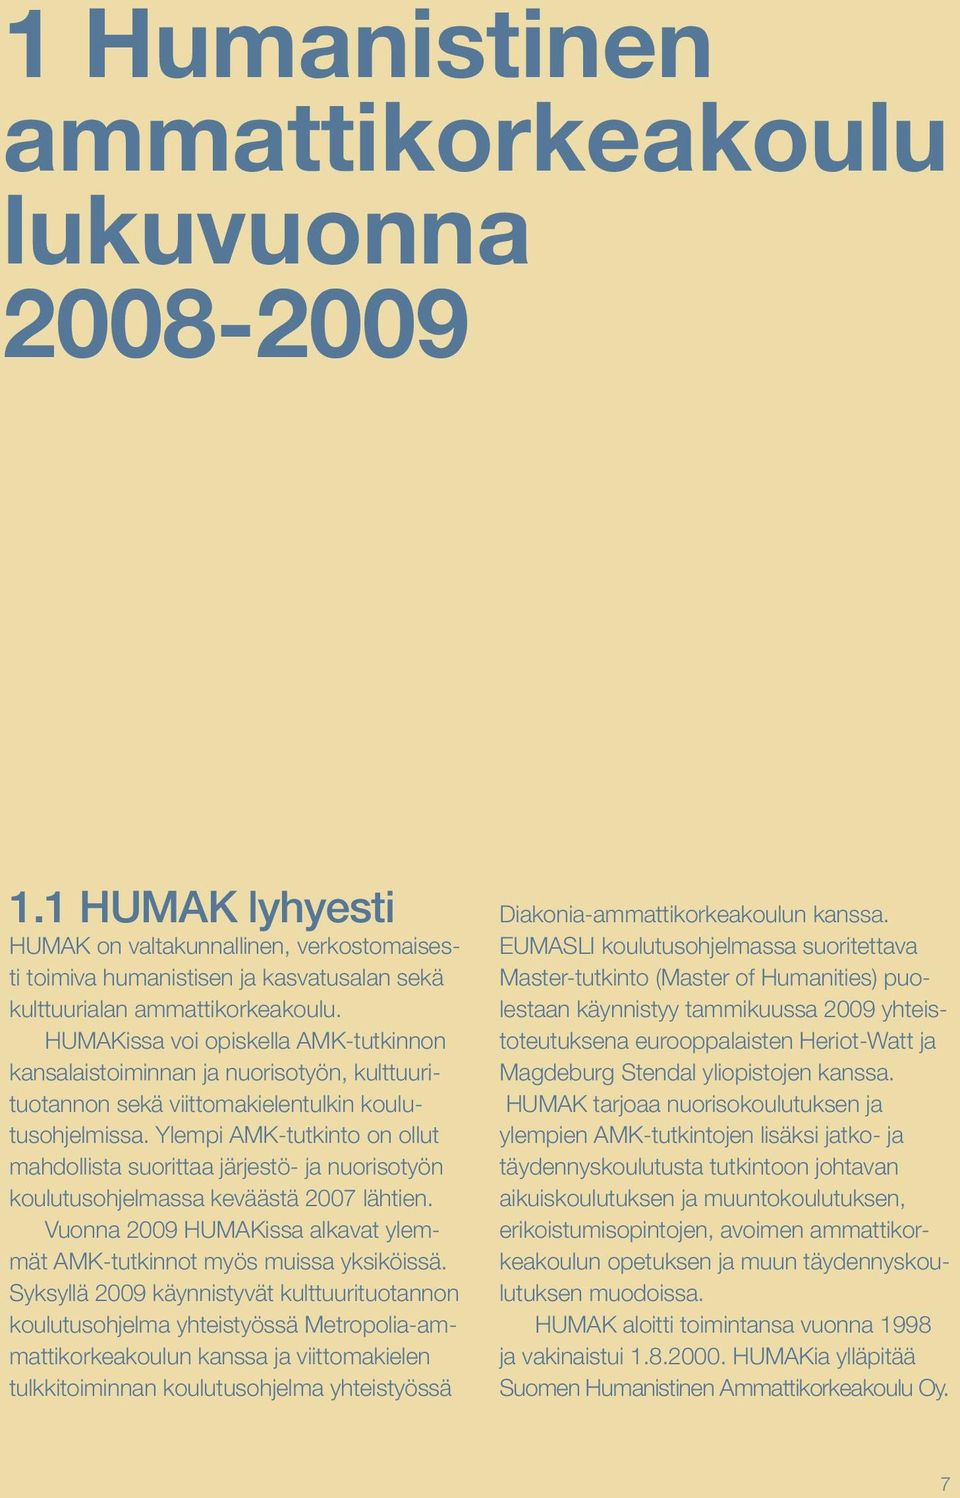 Ylempi AMK-tutkinto on ollut mahdollista suorittaa järjestö- ja nuorisotyön koulutusohjelmassa keväästä 2007 lähtien. Vuonna 2009 HUMAKissa alkavat ylemmät AMK-tutkinnot myös muissa yksiköissä.